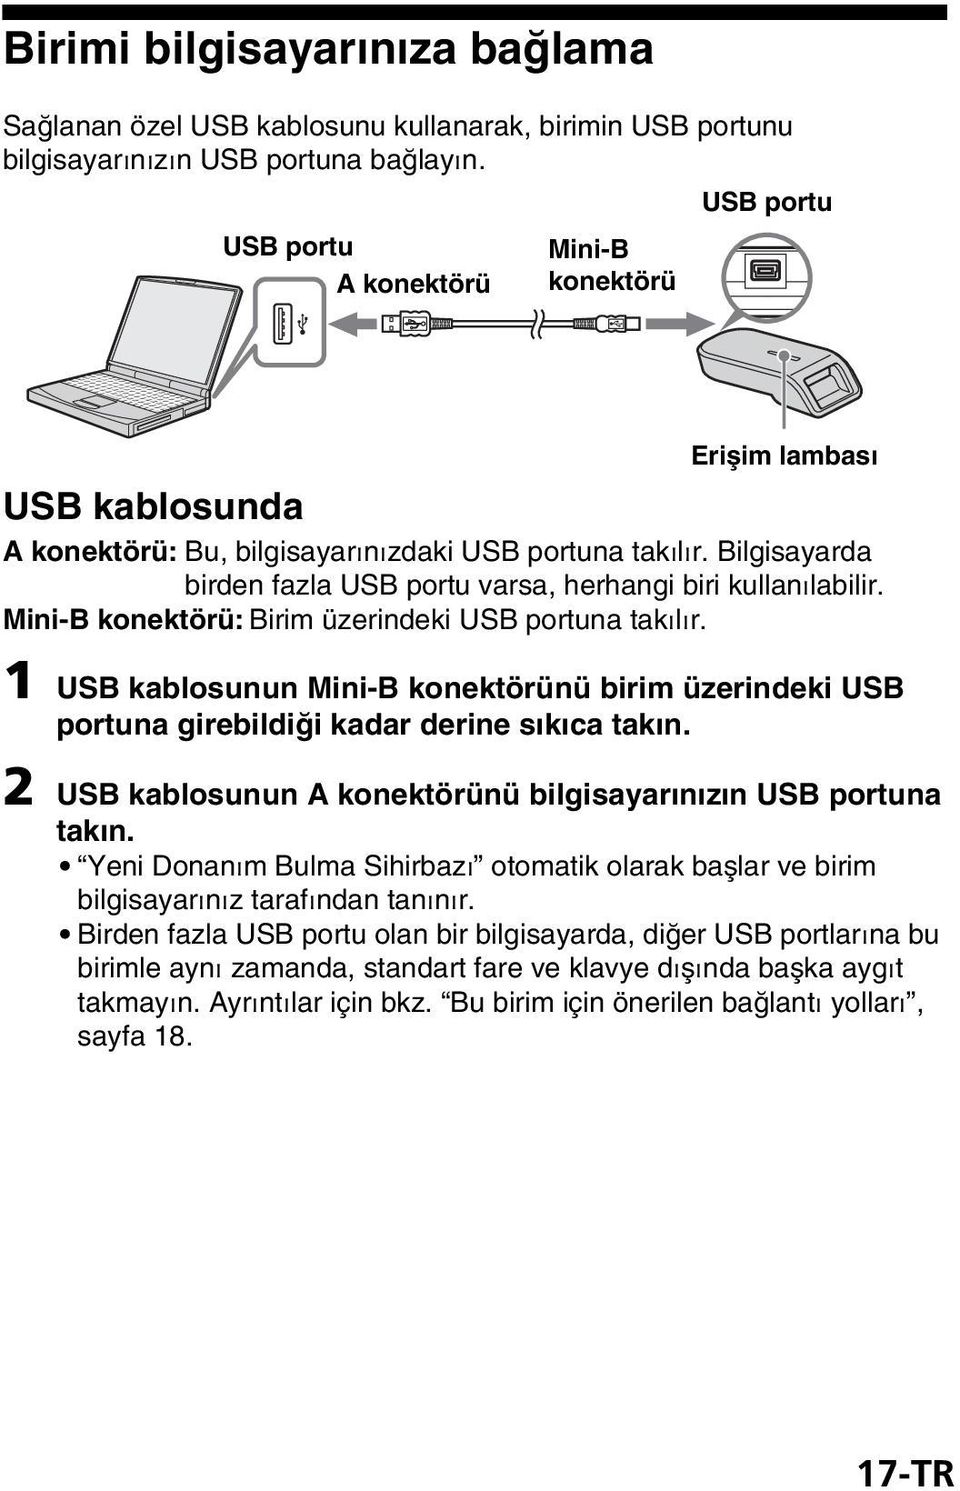 Bilgisayarda birden fazla USB portu varsa, herhangi biri kullanılabilir. Mini-B konektörü: Birim üzerindeki USB portuna takılır.